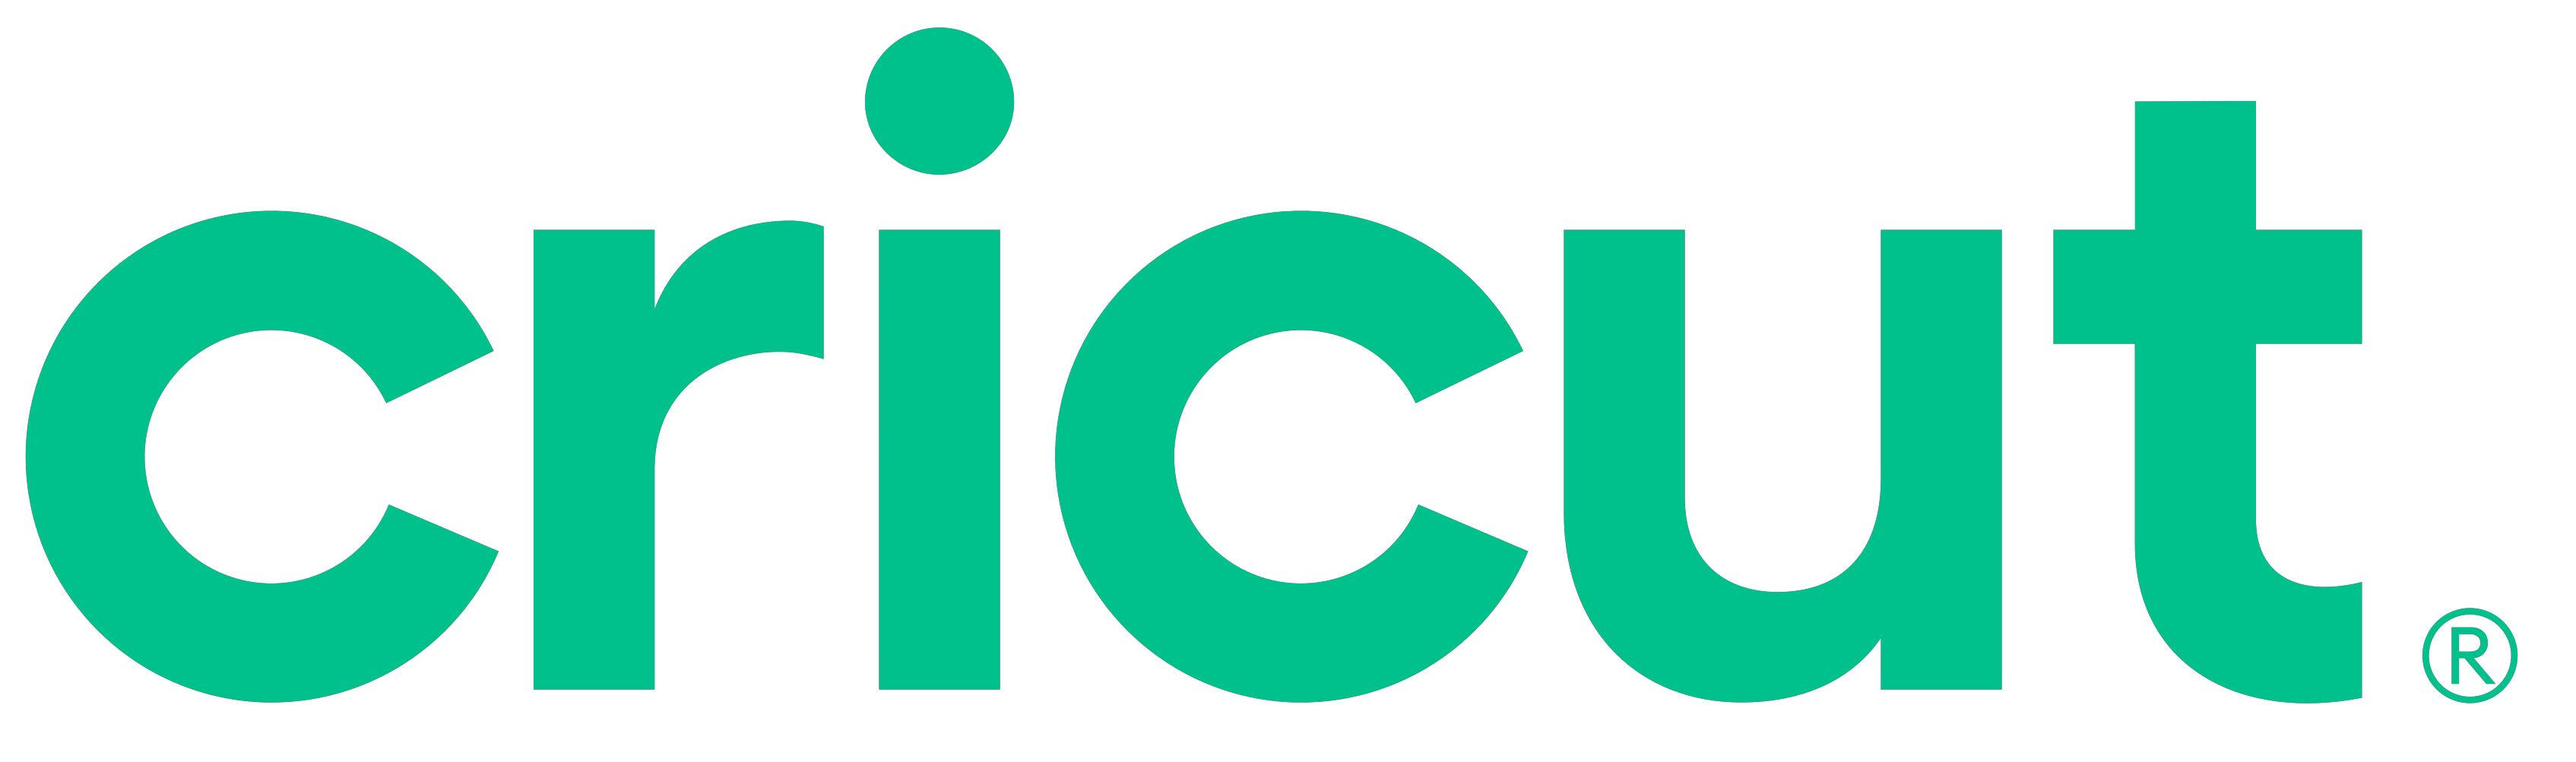 cricut-logo-0